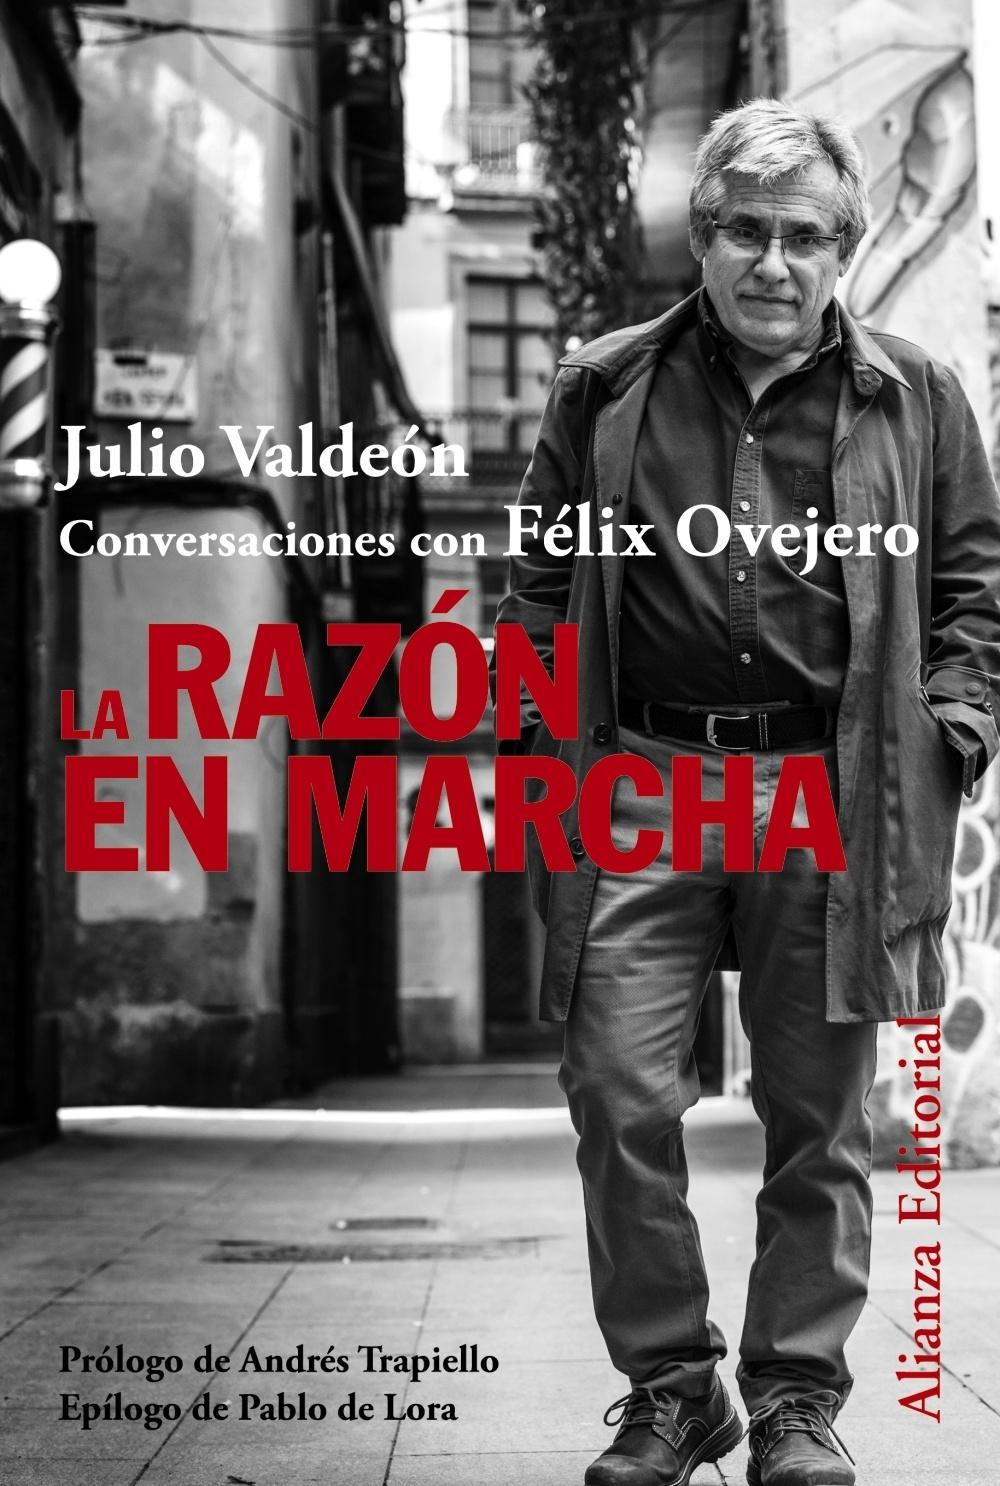 La Razón en Marcha "Julio Valdeón Conversaciones con Felix Ovejero". 